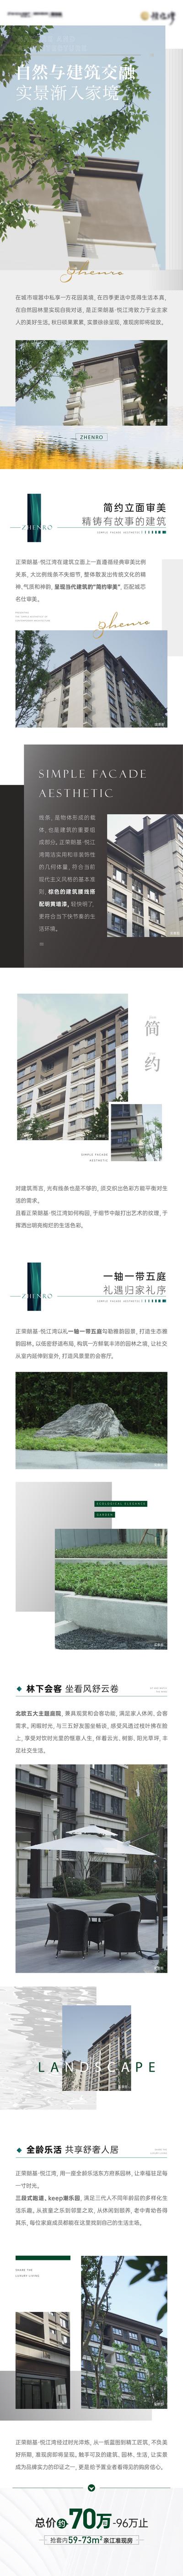 南门网 海报 中国传统节日 清明节 花朵 手绘 清新 简约